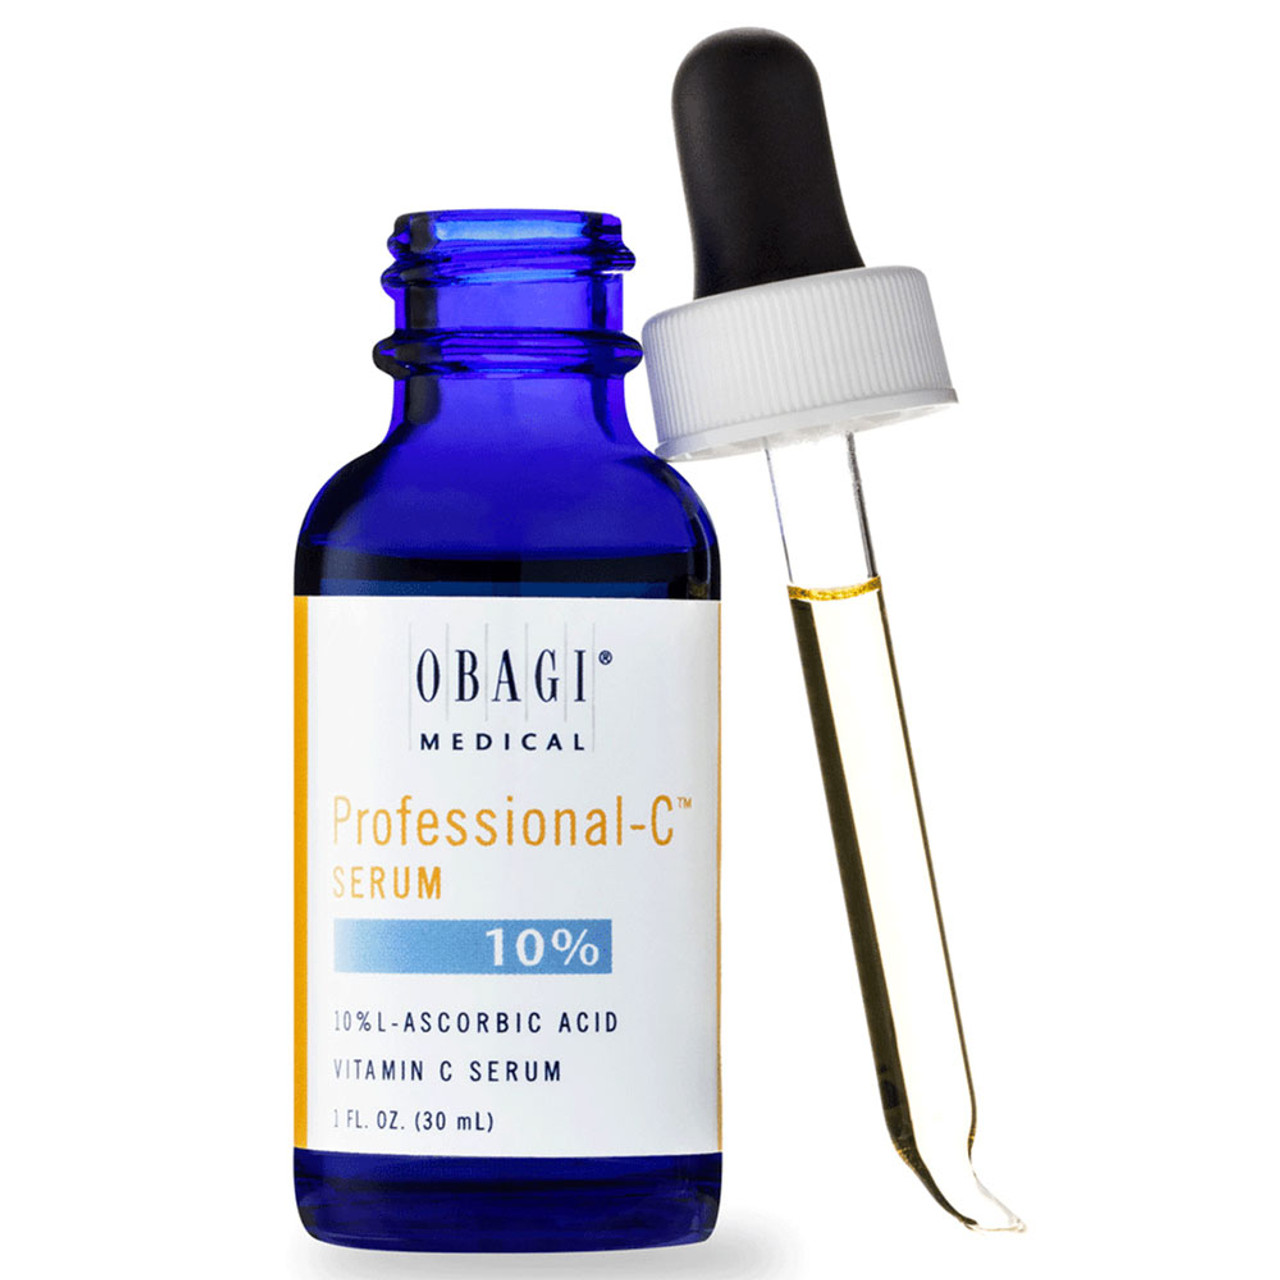 Obagi Professional-C Serum - 10%